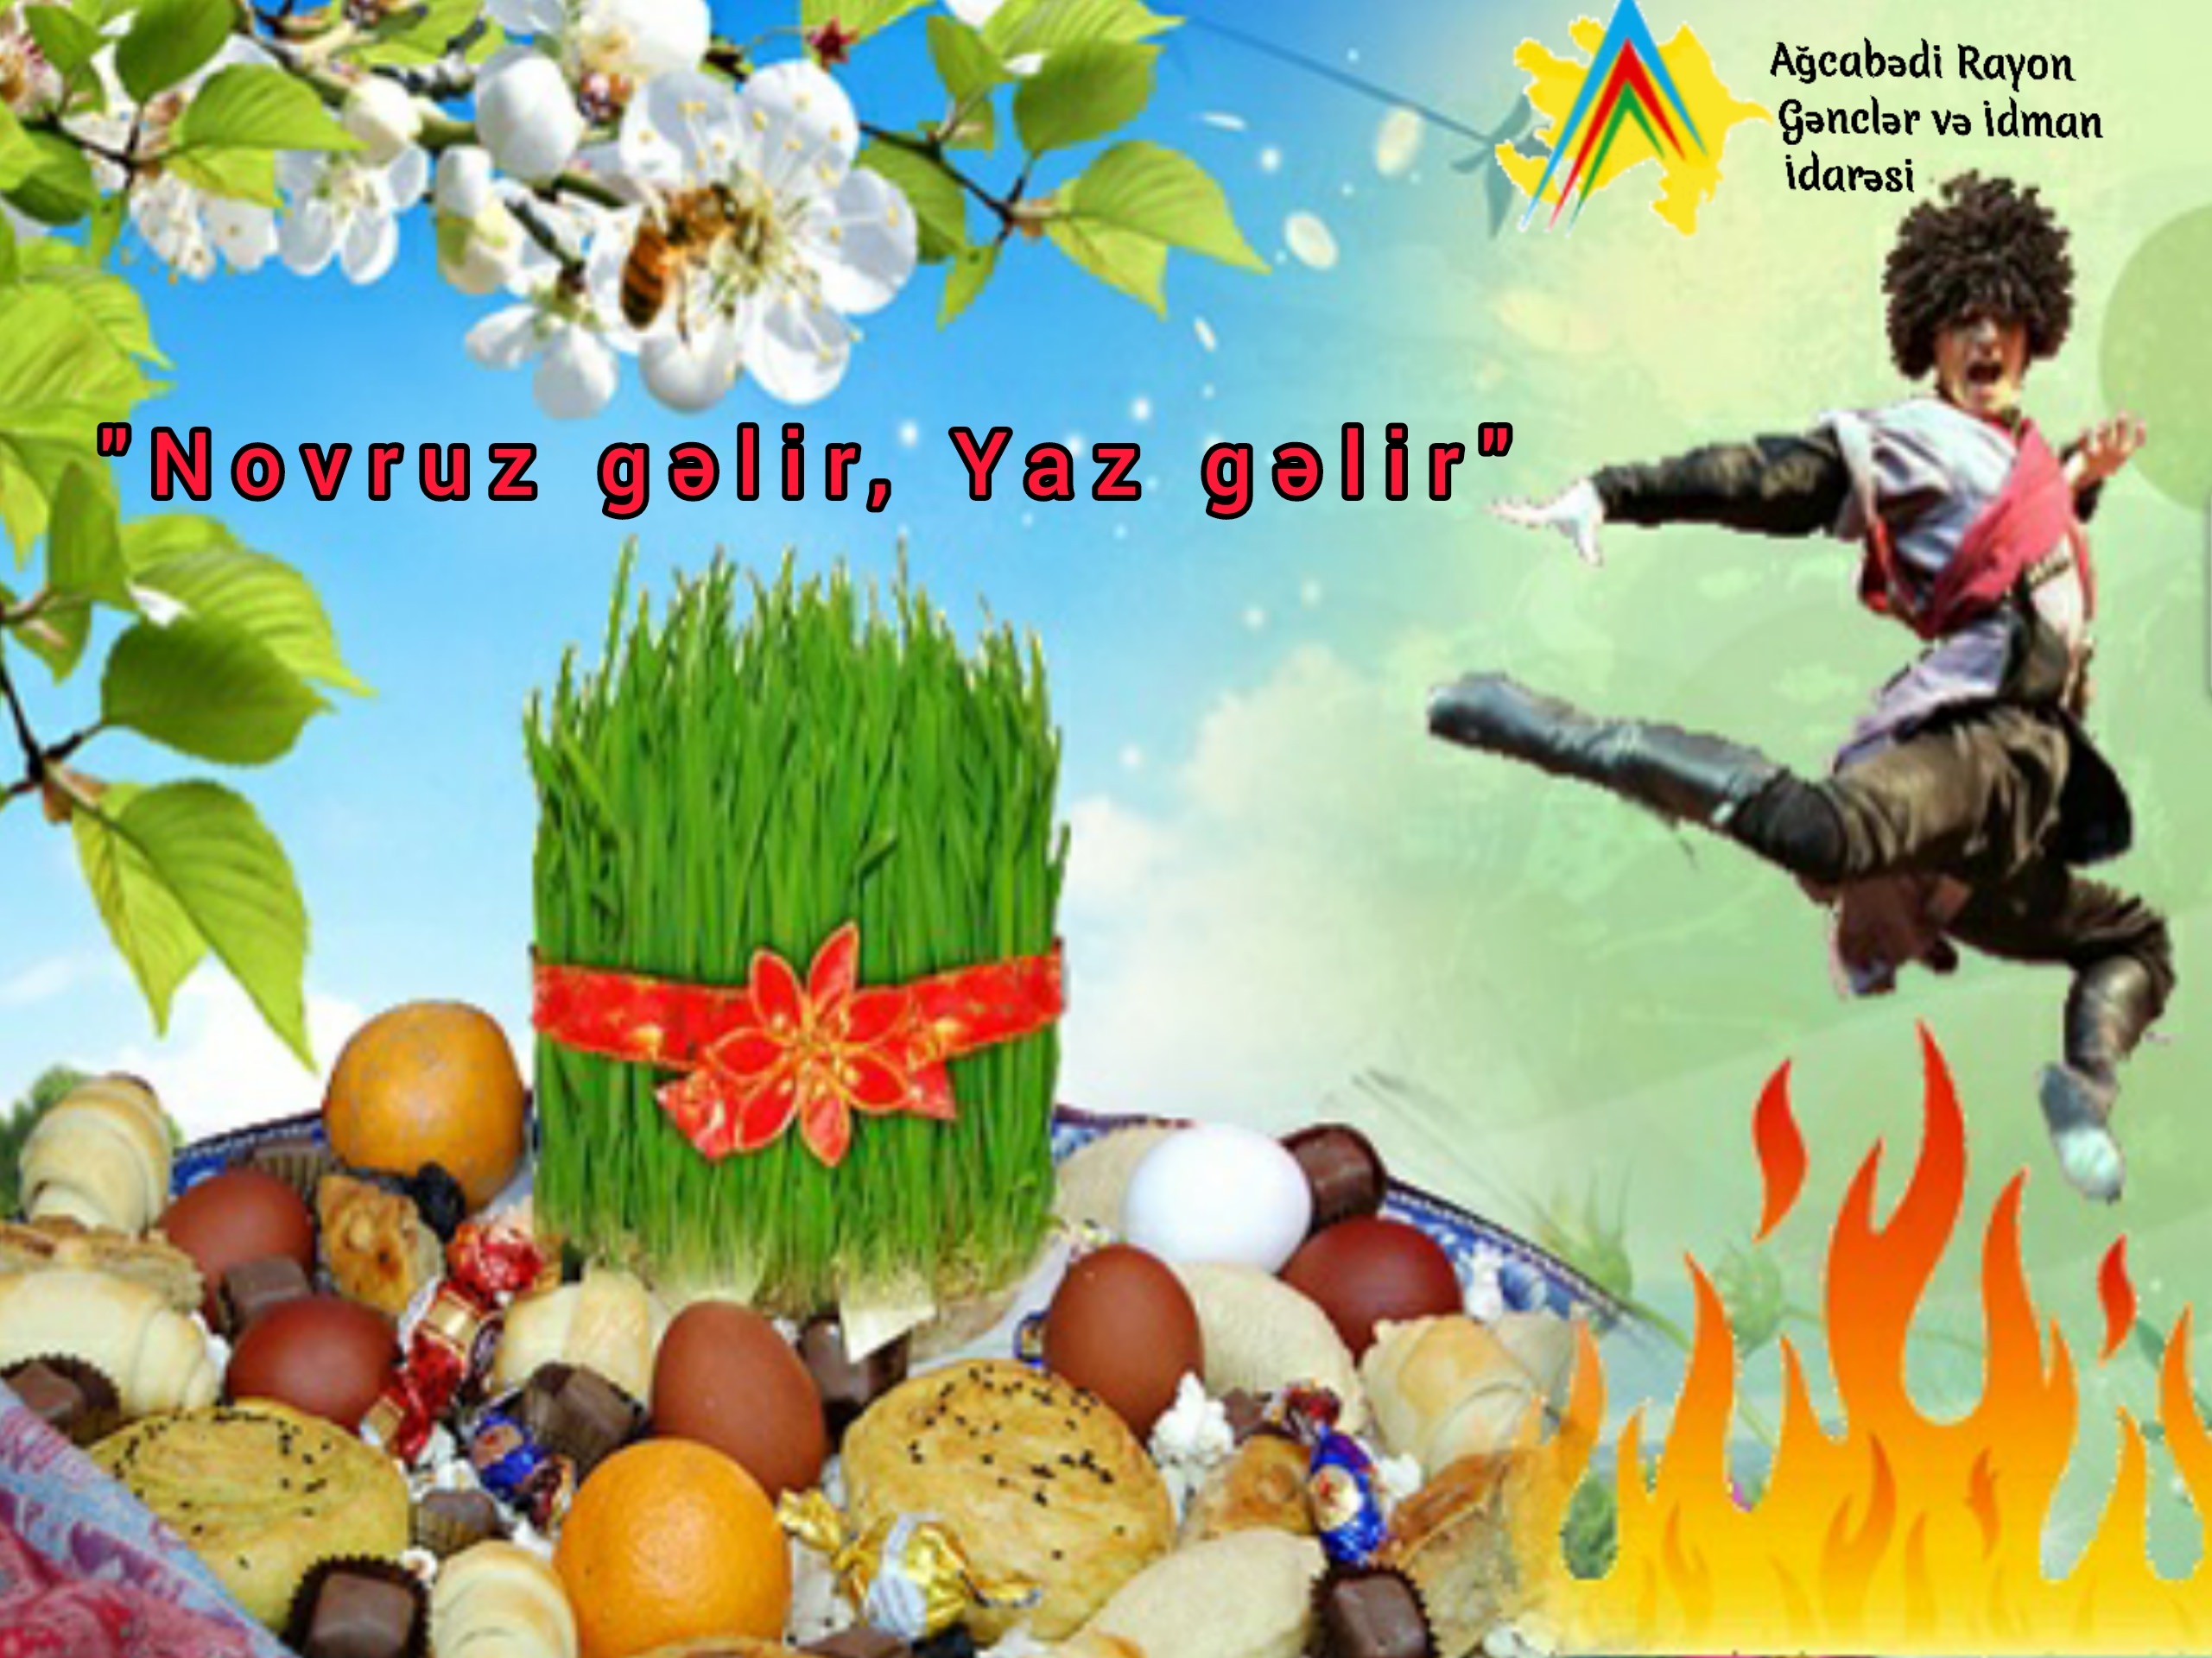 Поздравления на азербайджанском языке с новруз. Открытки с праздником Навруз. Новруз байрам открытки. Стикеры Новруз байрам. Навруз символы праздника.